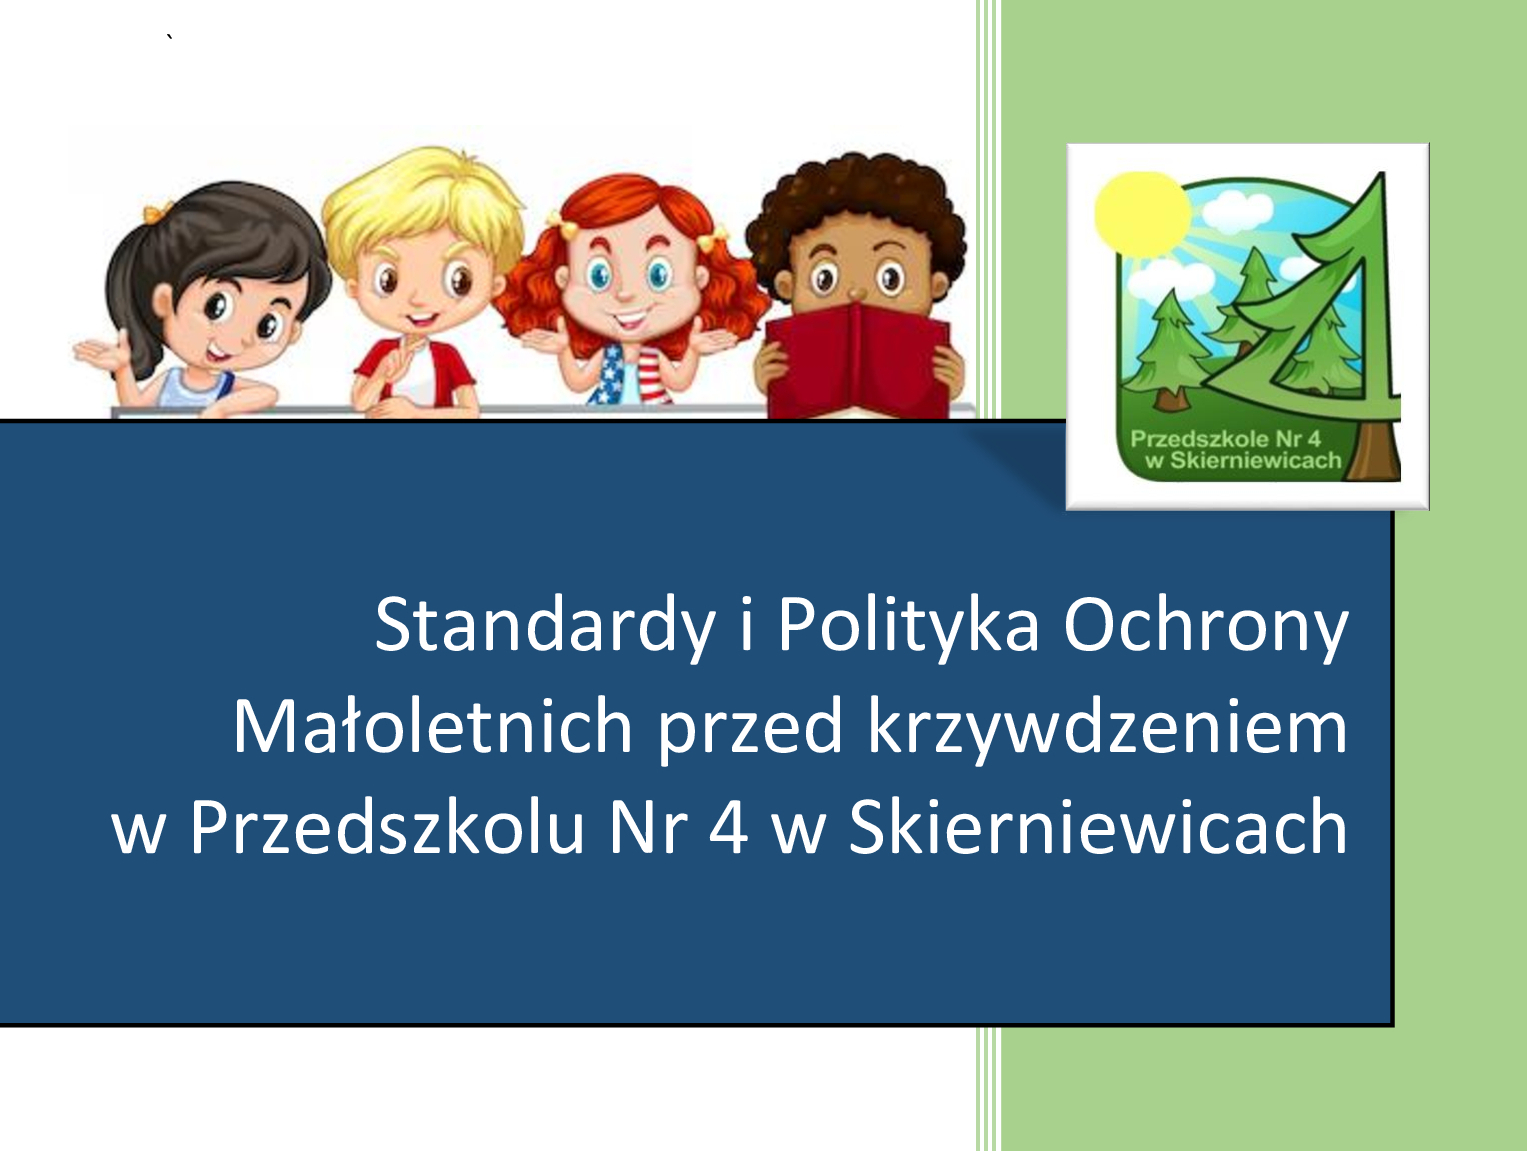 Standardy Ochrony Małoletnich w Przedszkolu Nr 4 w Skierniewicach - grafika